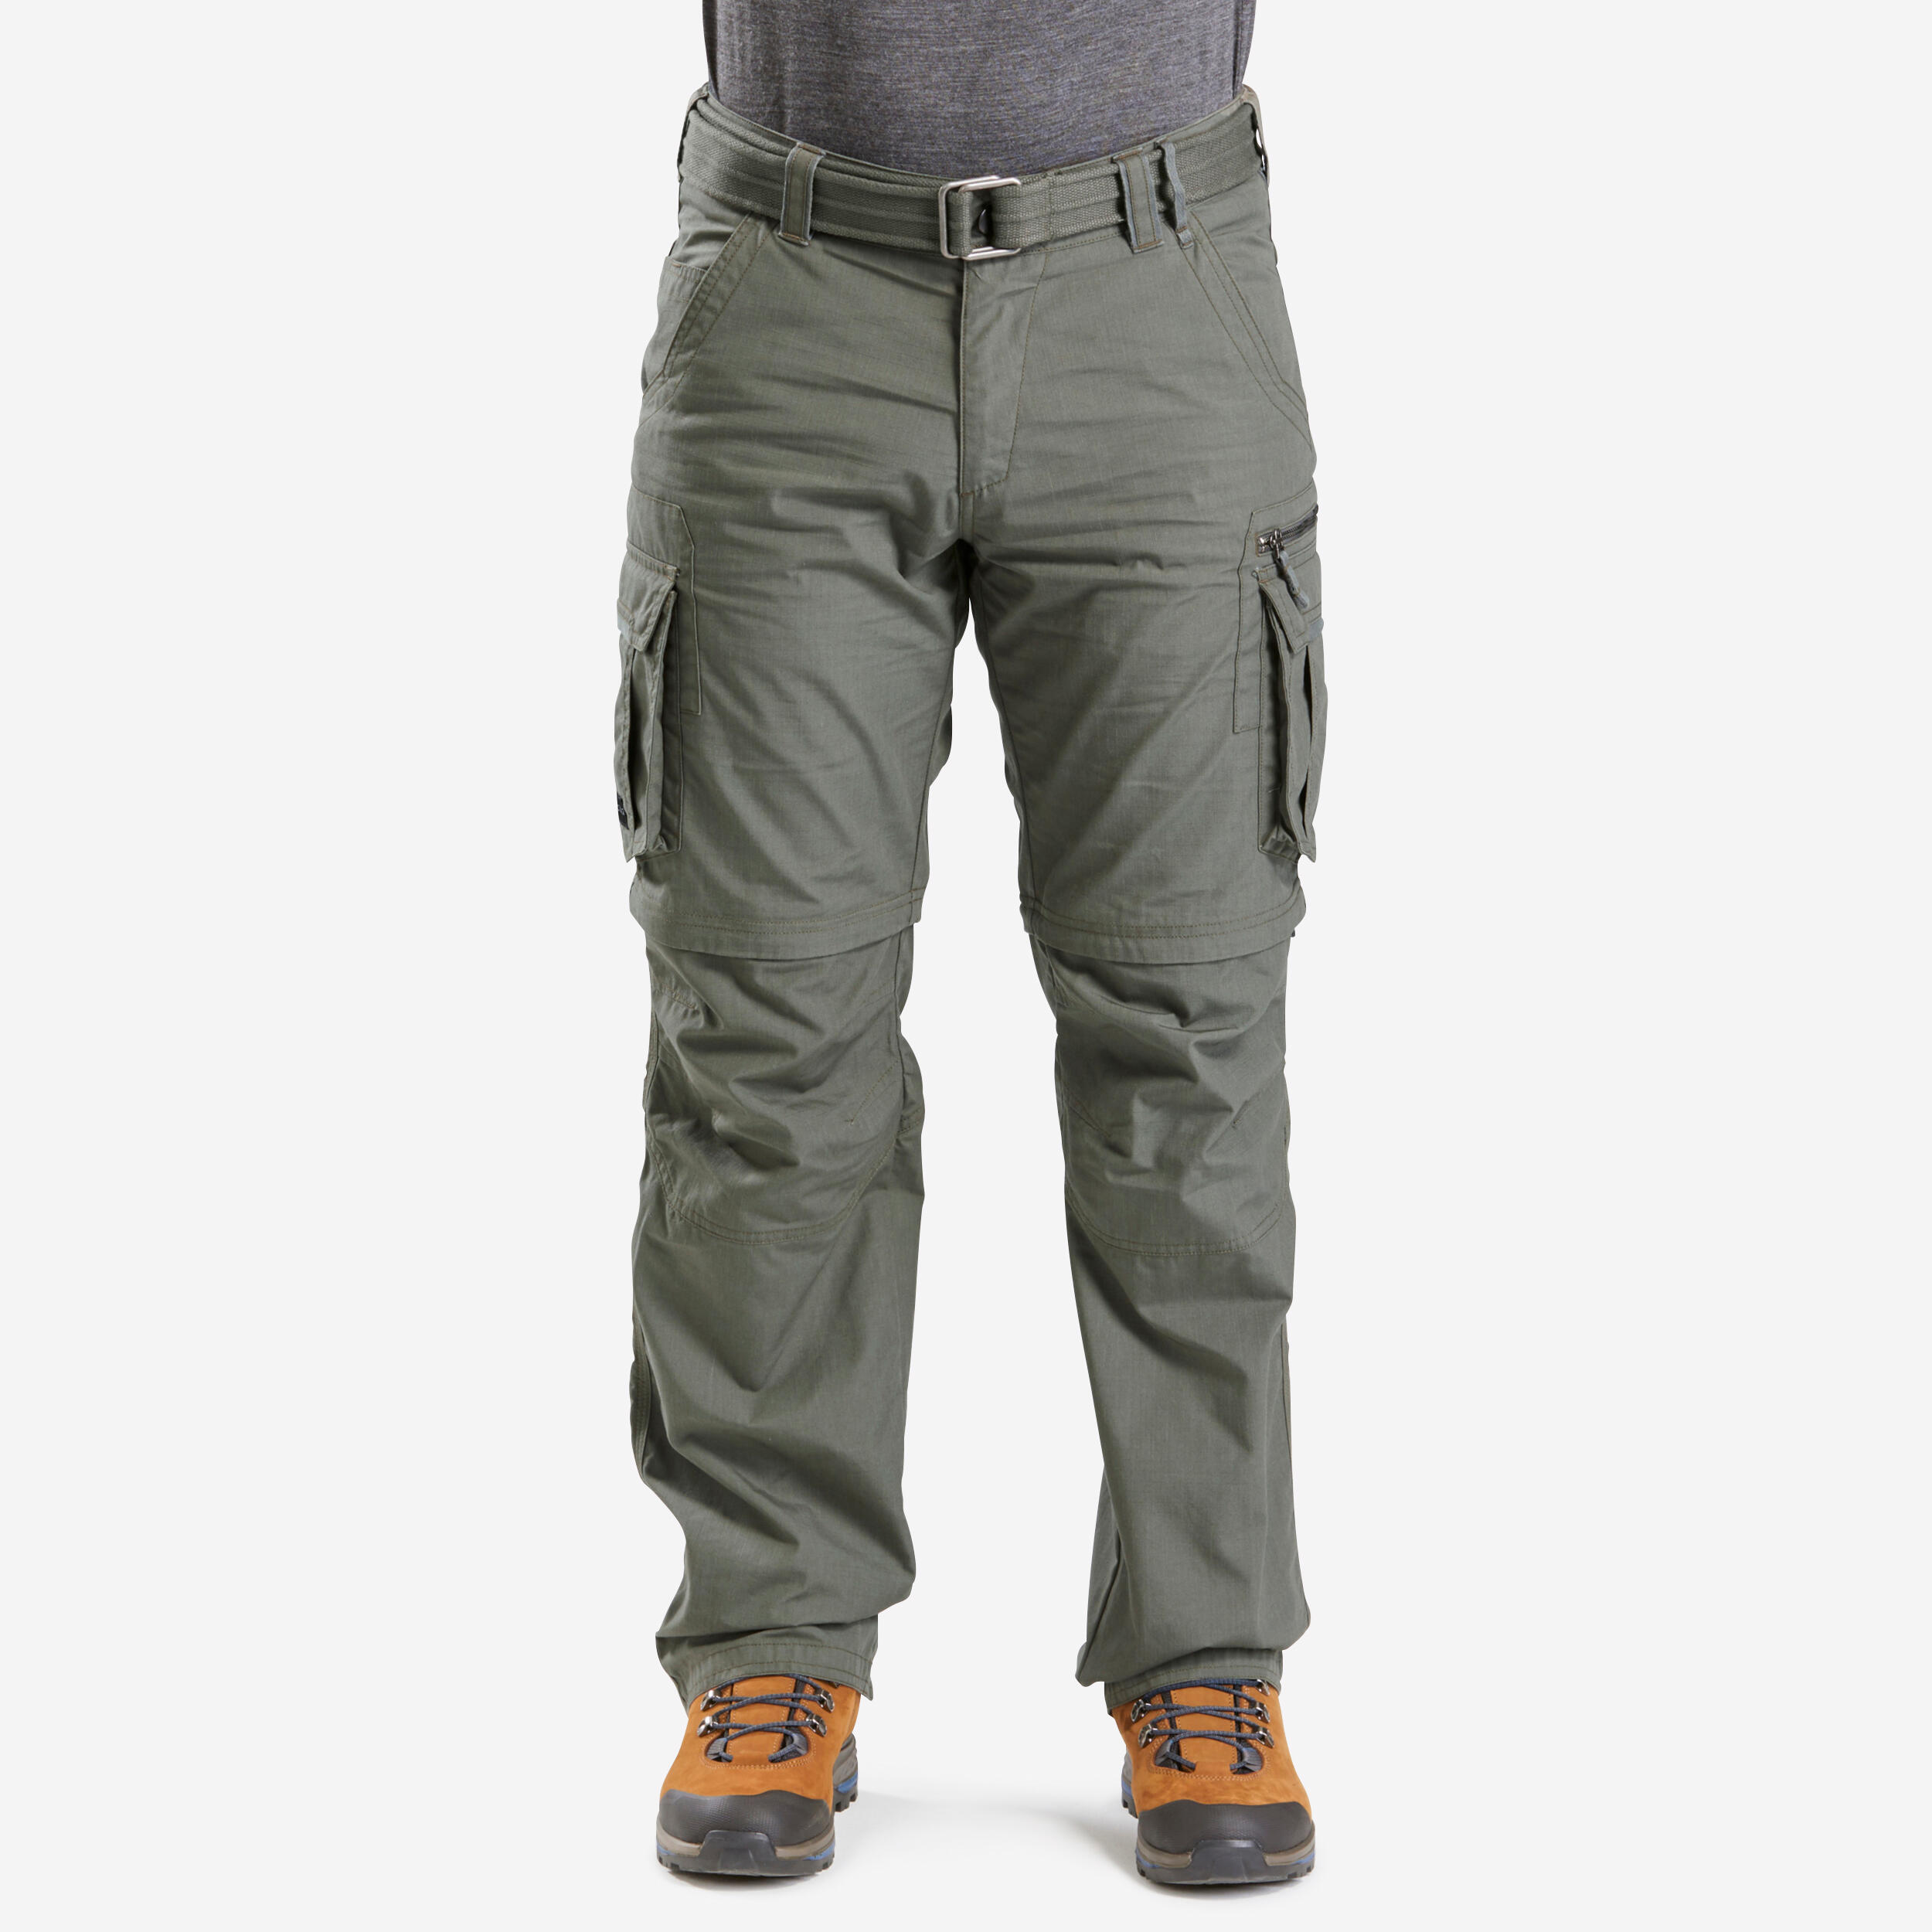 FORCLAZ Men's Travel Trekking Zip-Off Cargo Trousers - Travel 100 Zip-Off - khaki